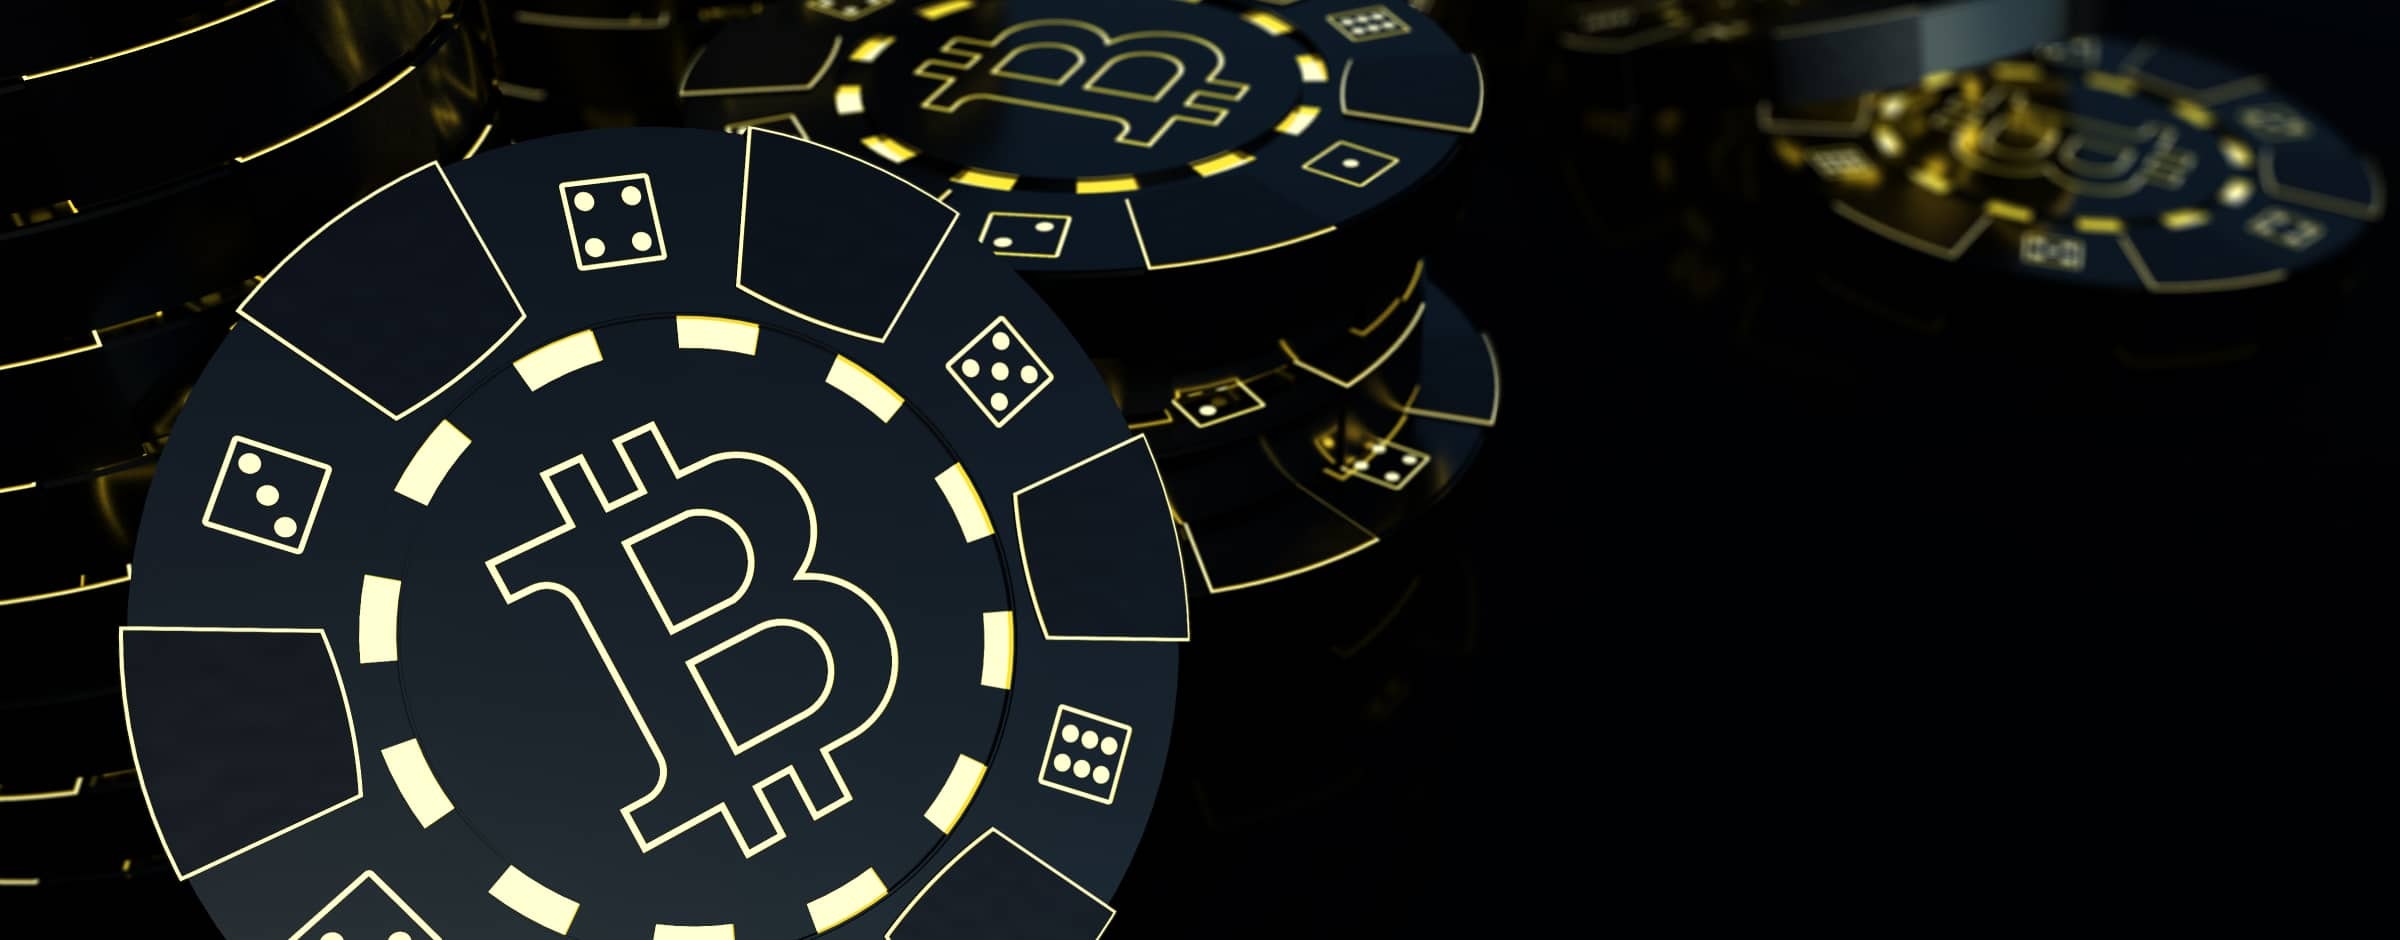 Der Profi-Leitfaden für das Glücksspiel mit Bitcoin